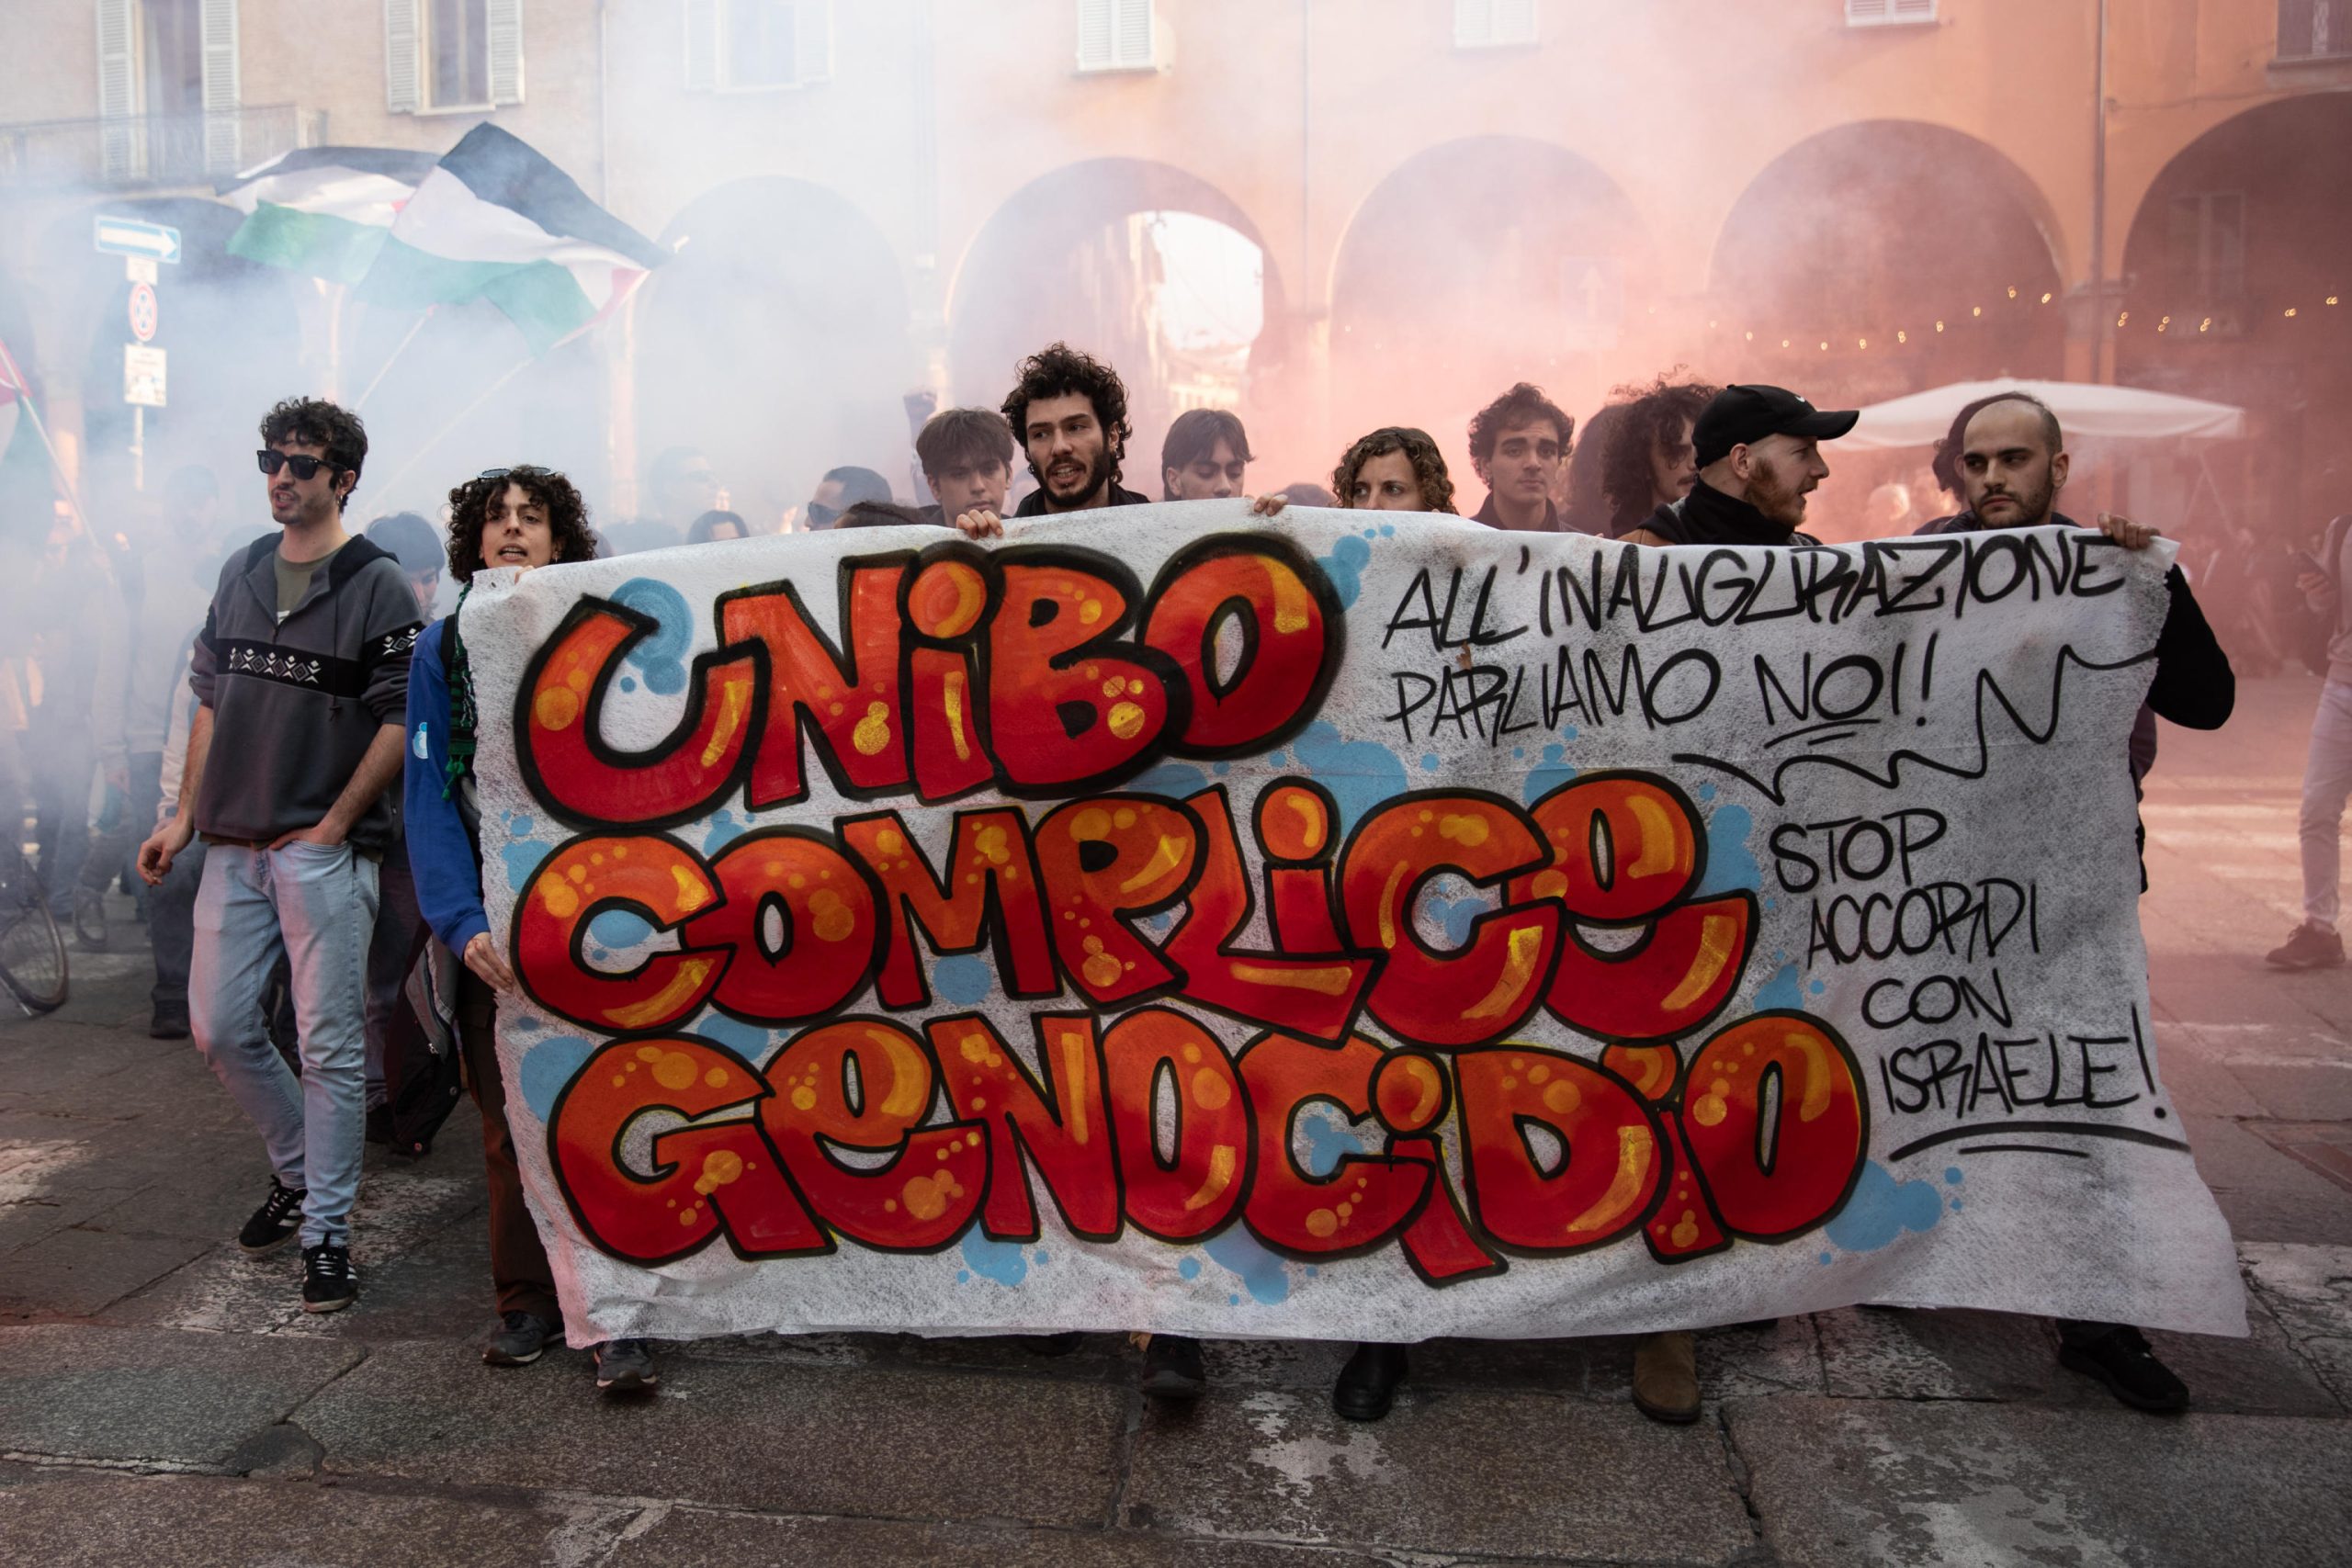 Il corteo dei collettivi mentre sventola uno striscione con scritto "Unibo complice del genocidio"